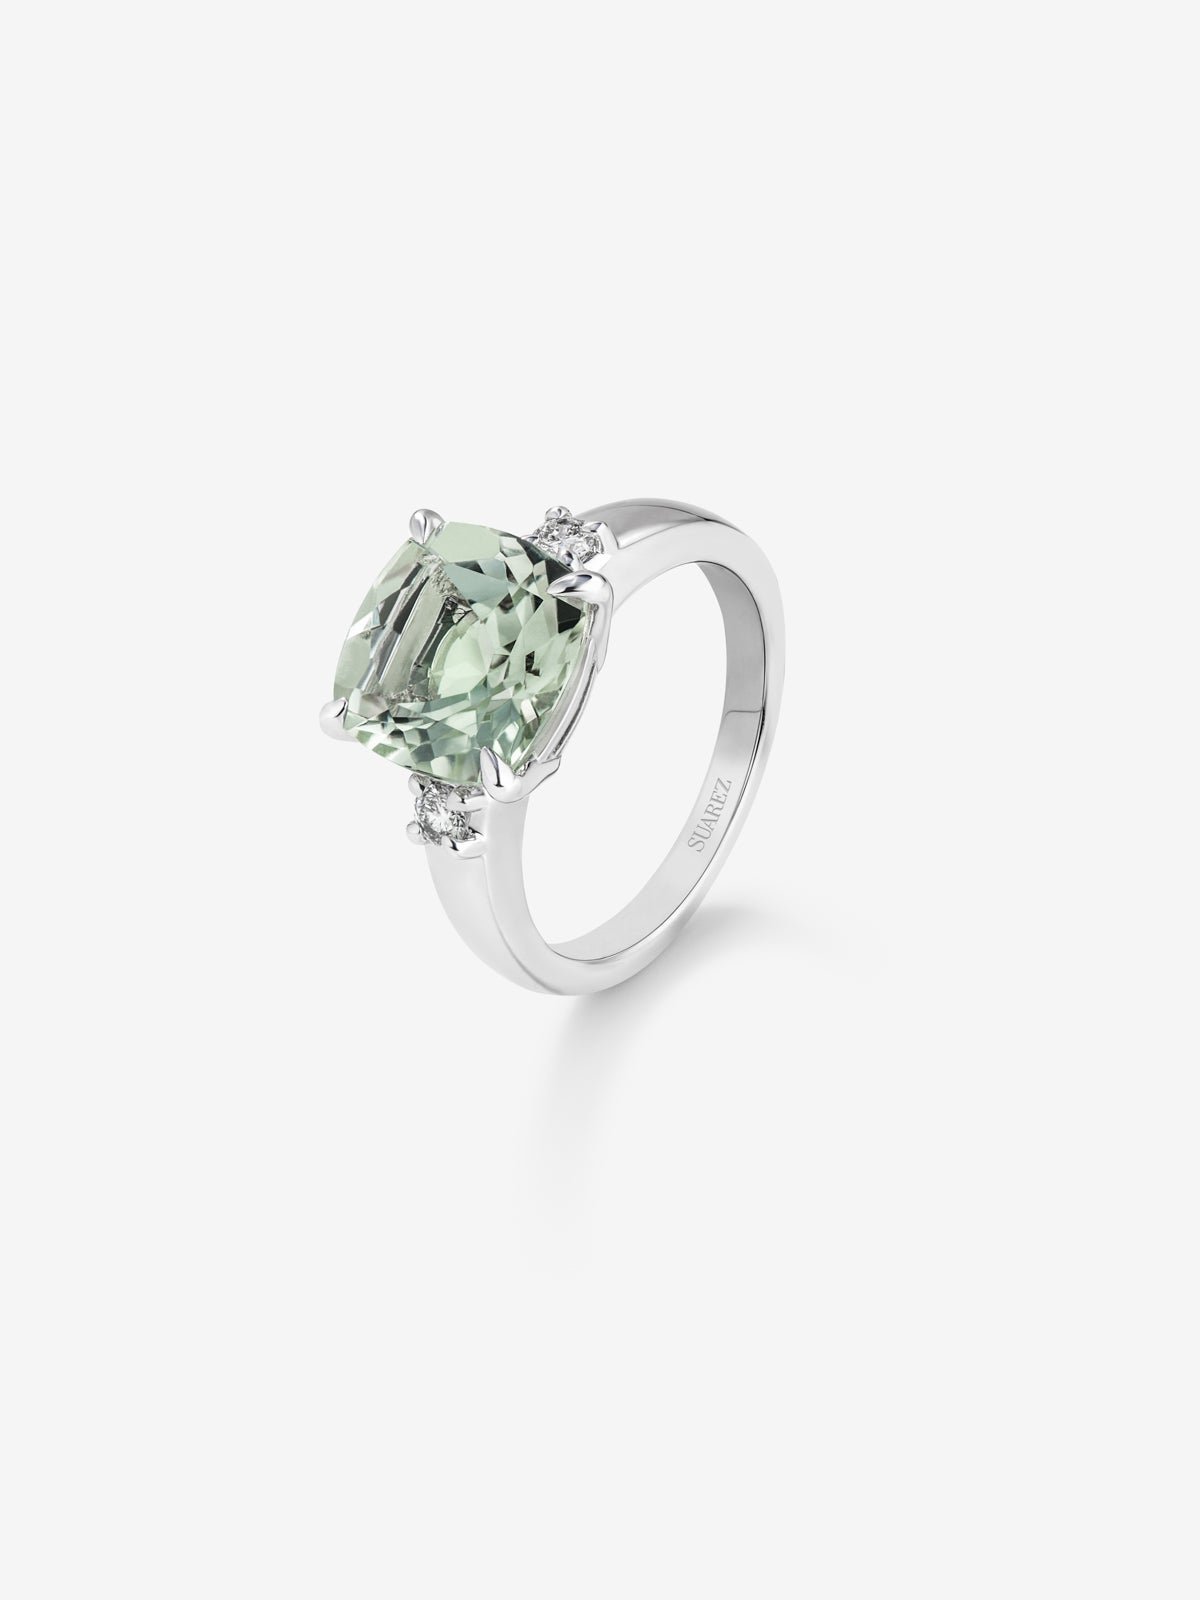 Anillo tresillo de plata 925 con amatista verde en talla cushion de 3,95 cts y 2 diamantes en talla brillante con un total de 0,12 cts